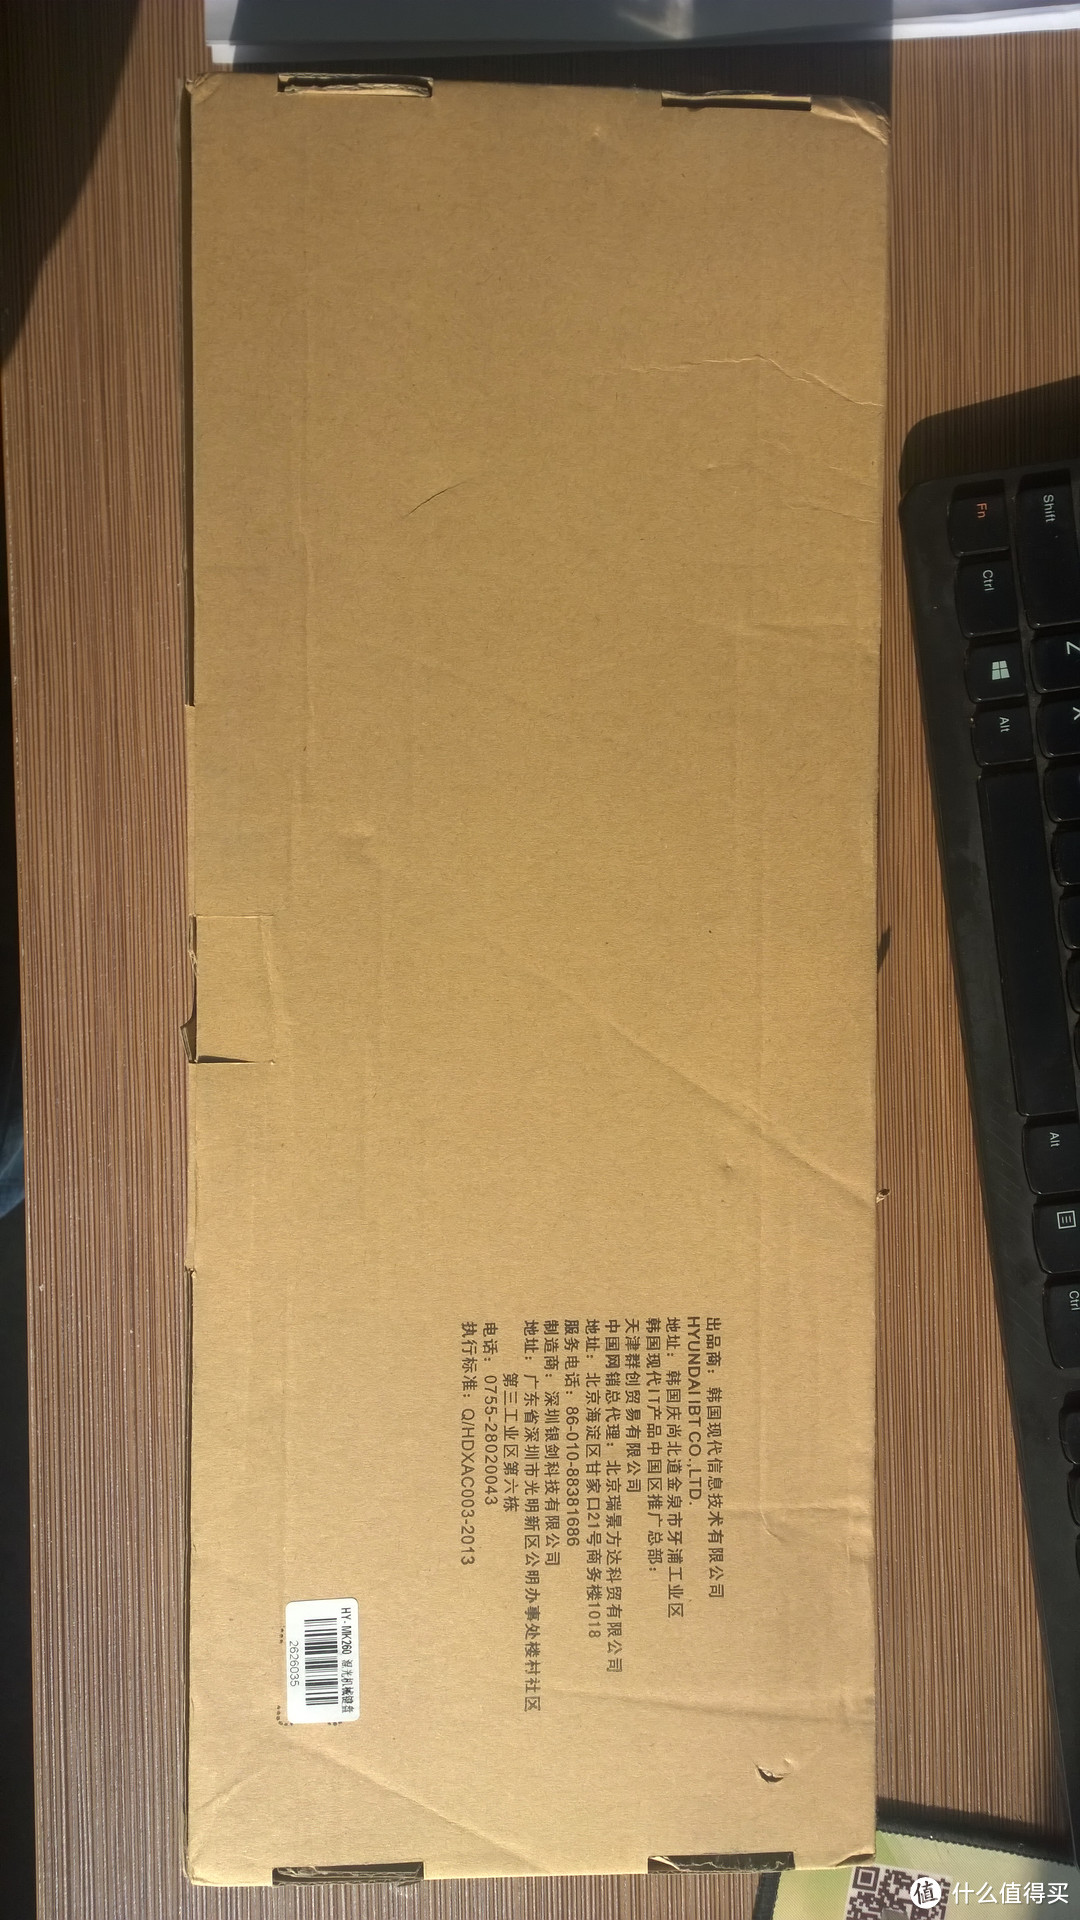 HYUNDAI 现代 MK260 黑色青轴 机械键盘 开箱